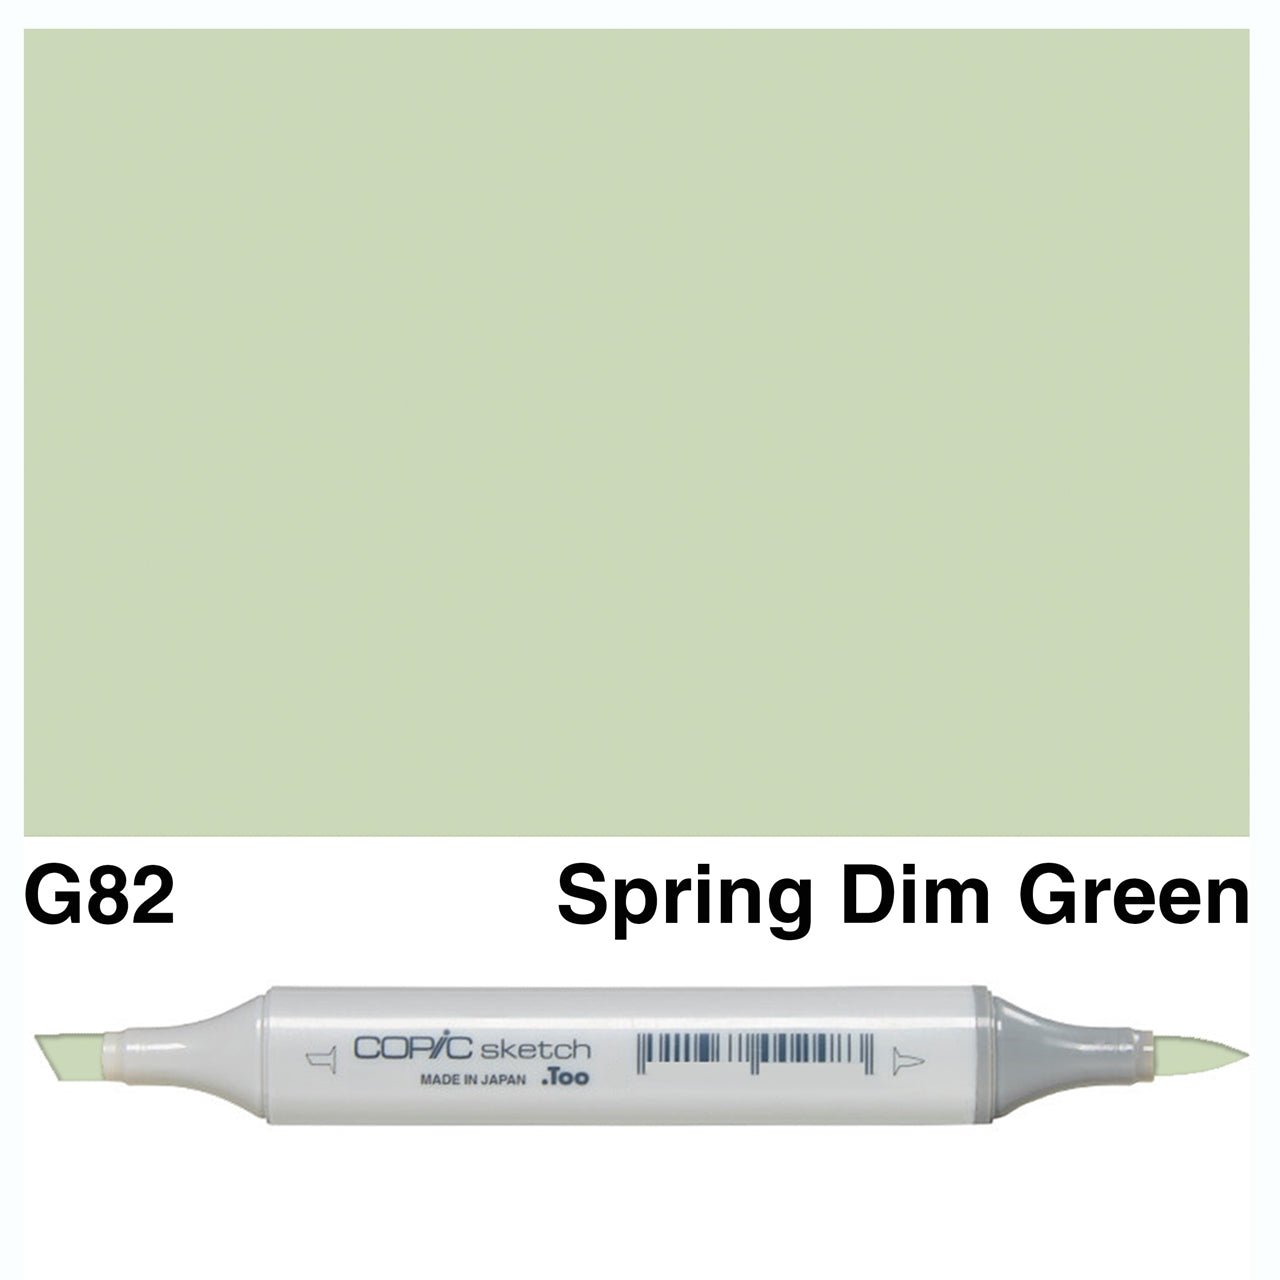 Copic Sketch G82 Spring Dim Green - theartshop.com.au